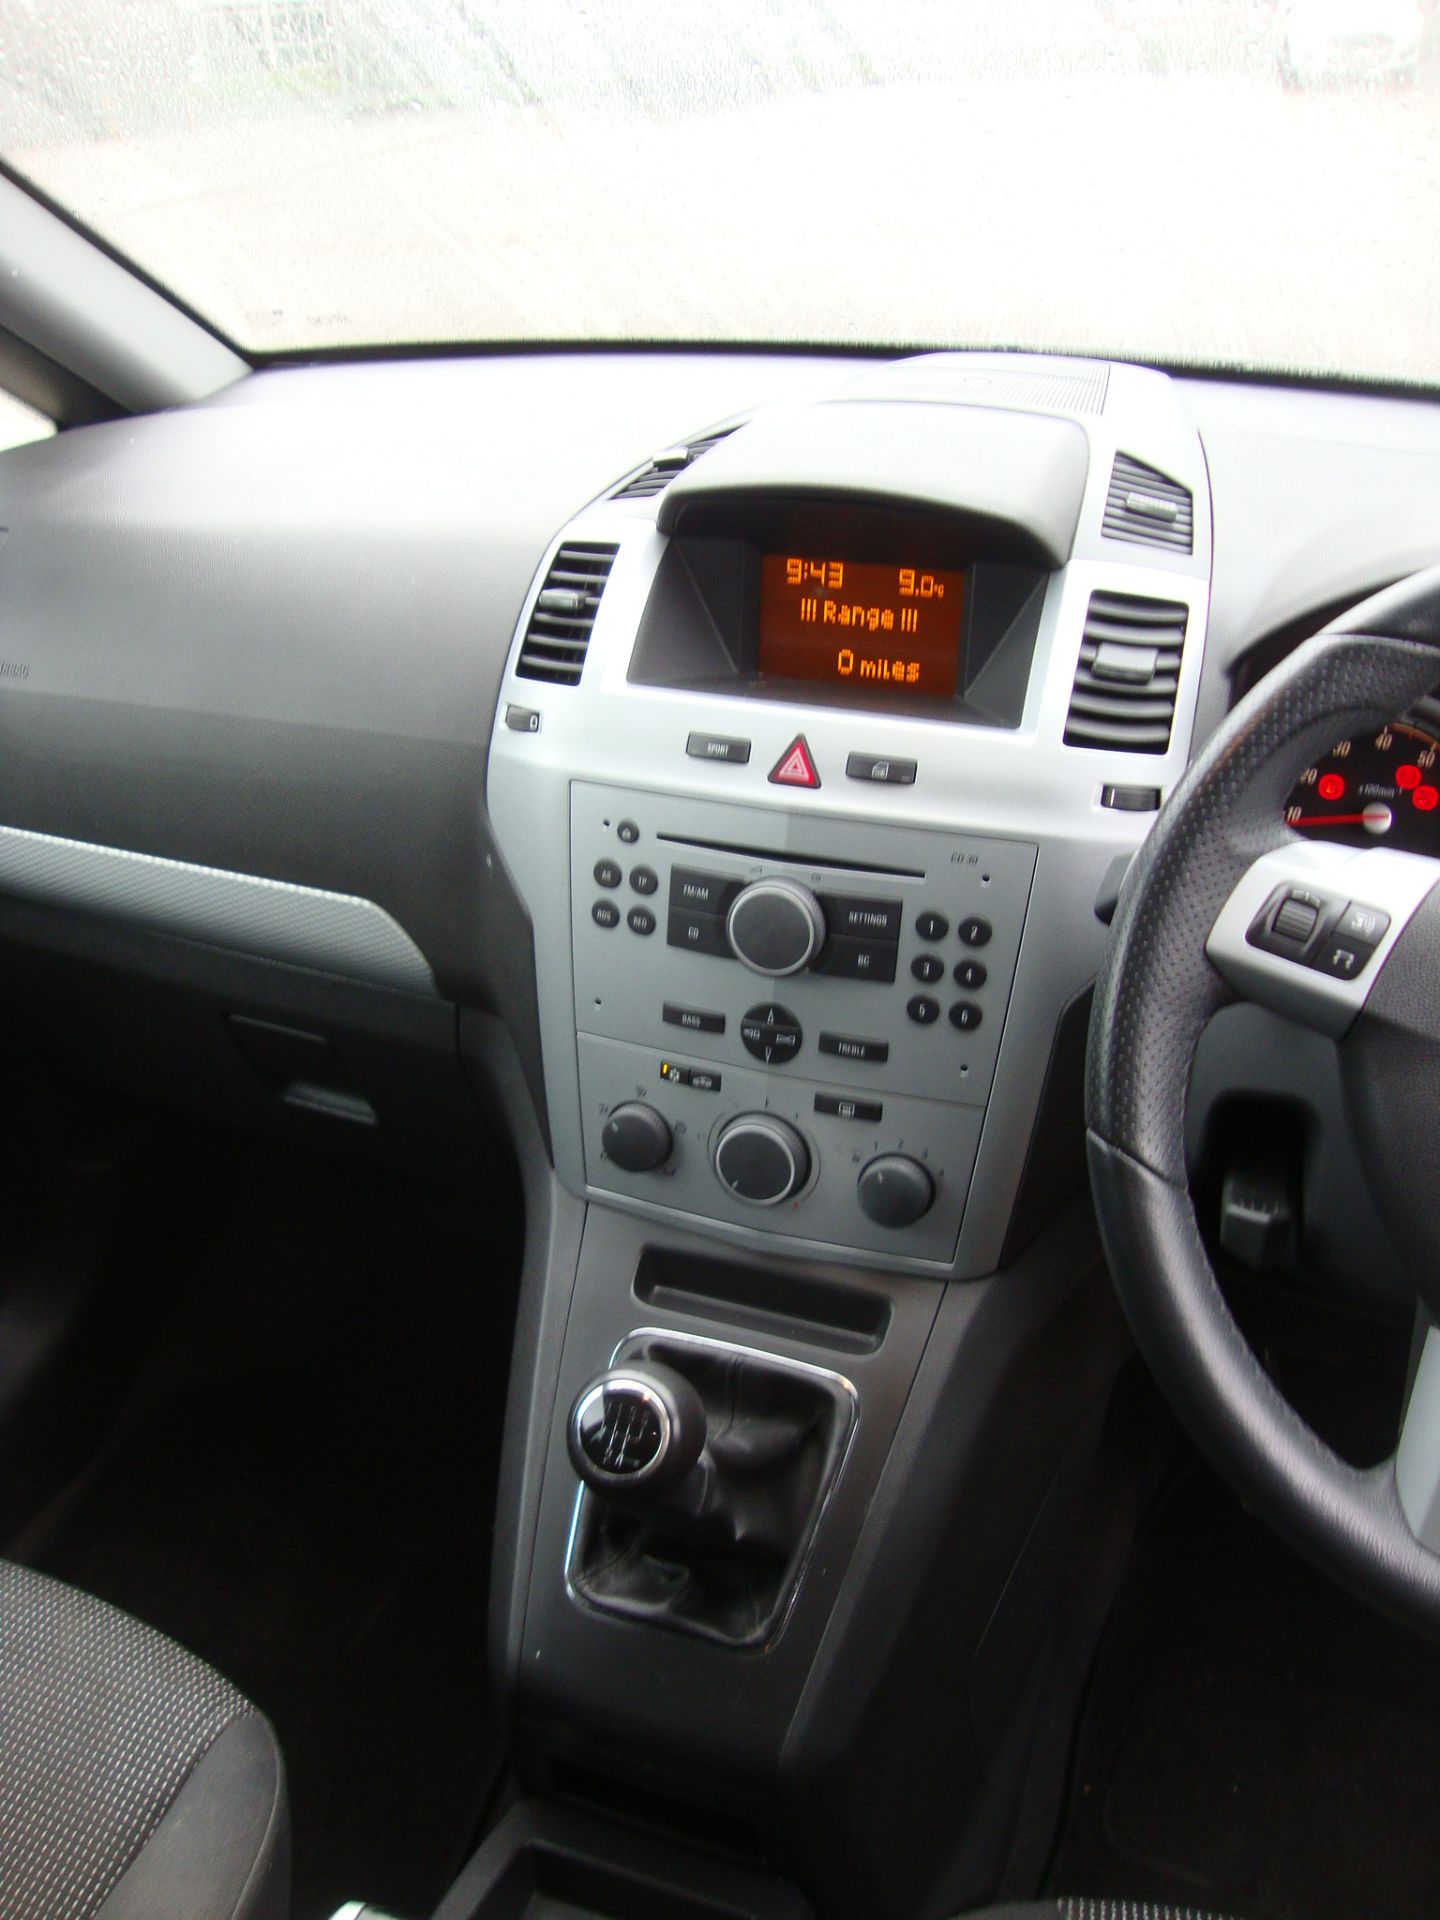 KG56 CJO Vauxhall Zafira SRI XP 140 7-seat MPV - Image 11 of 14